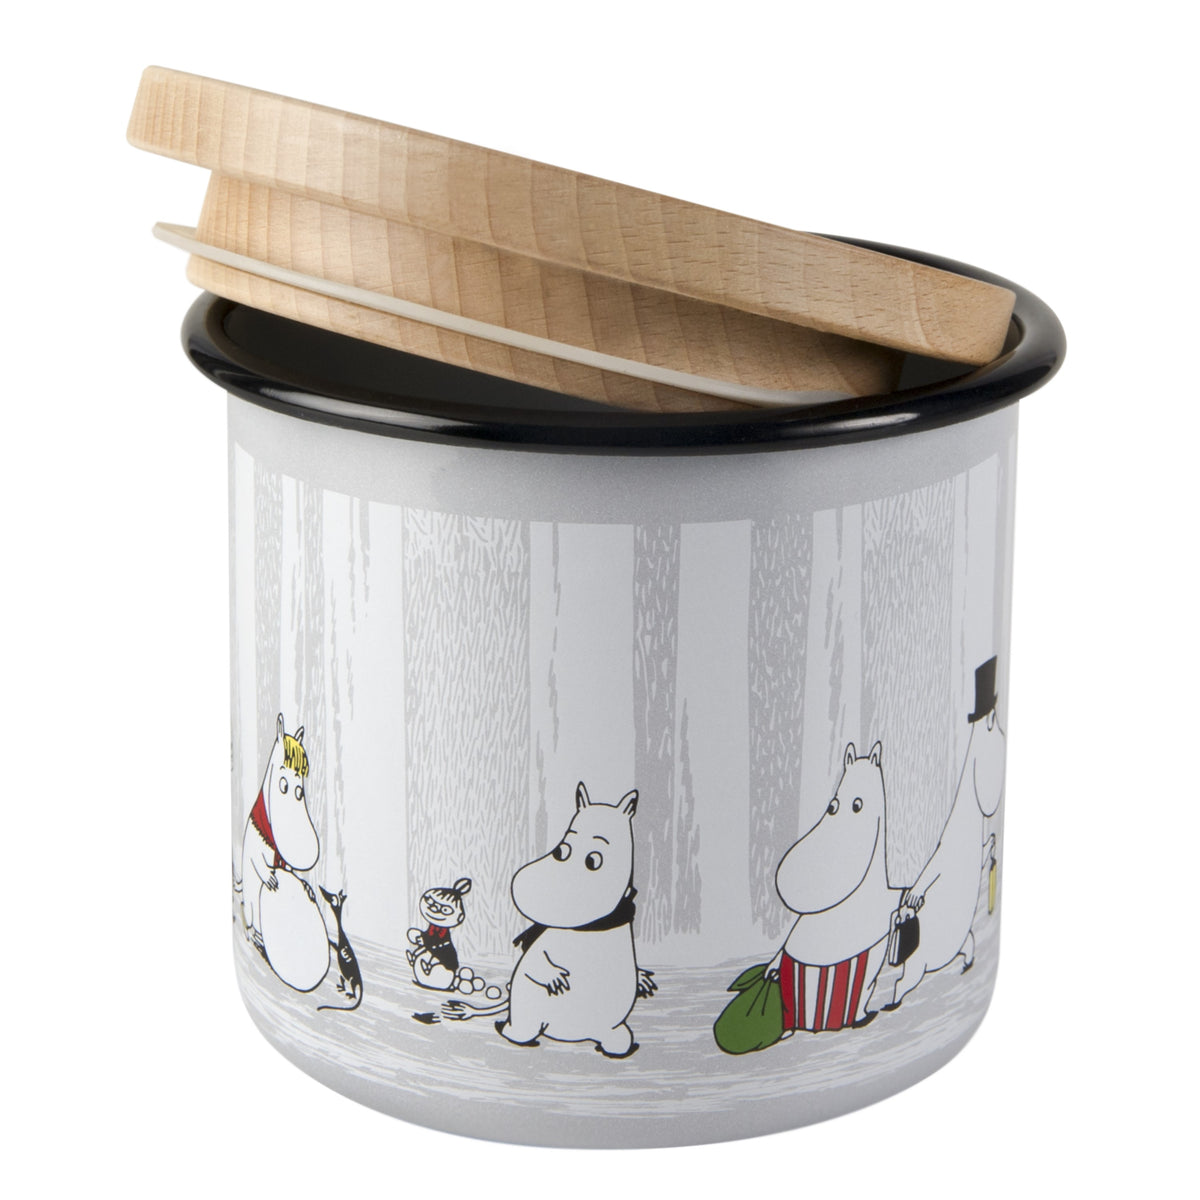 MUURLA | Moomin | Winter Trip | Enamel Storage Jar with Wooden Lid | 12cm